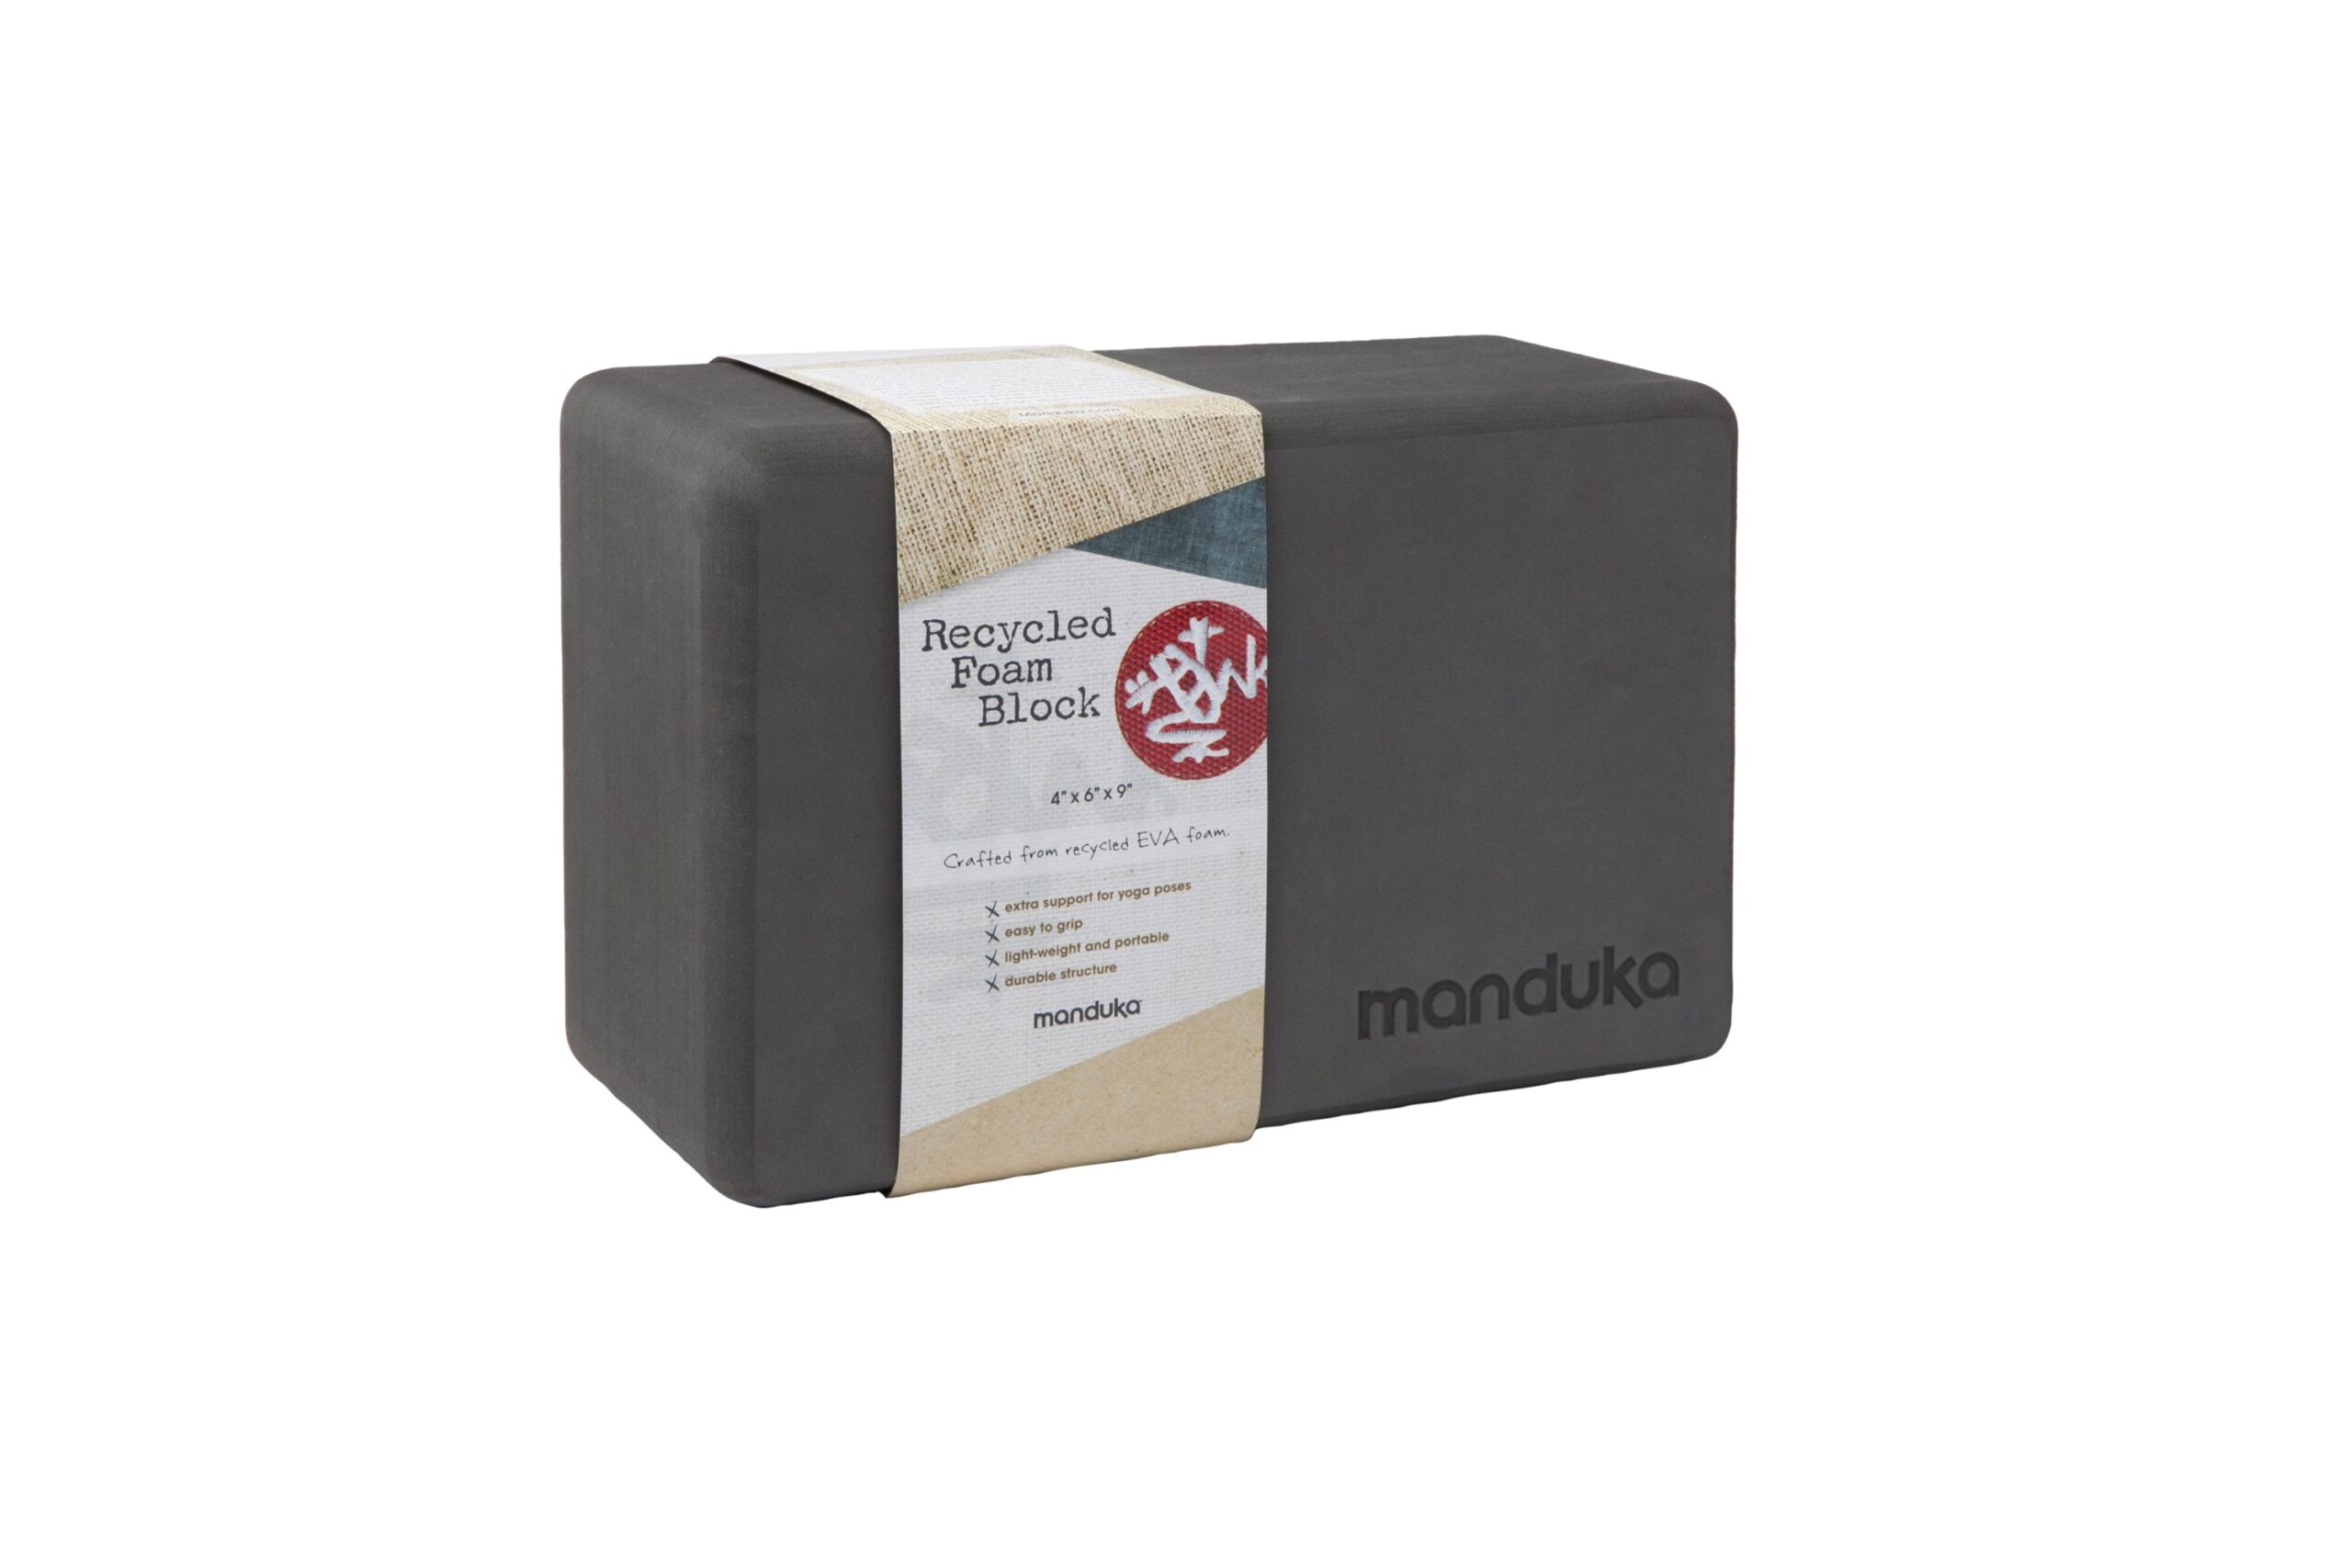 Manduka Recycled Foam Yoga Block at